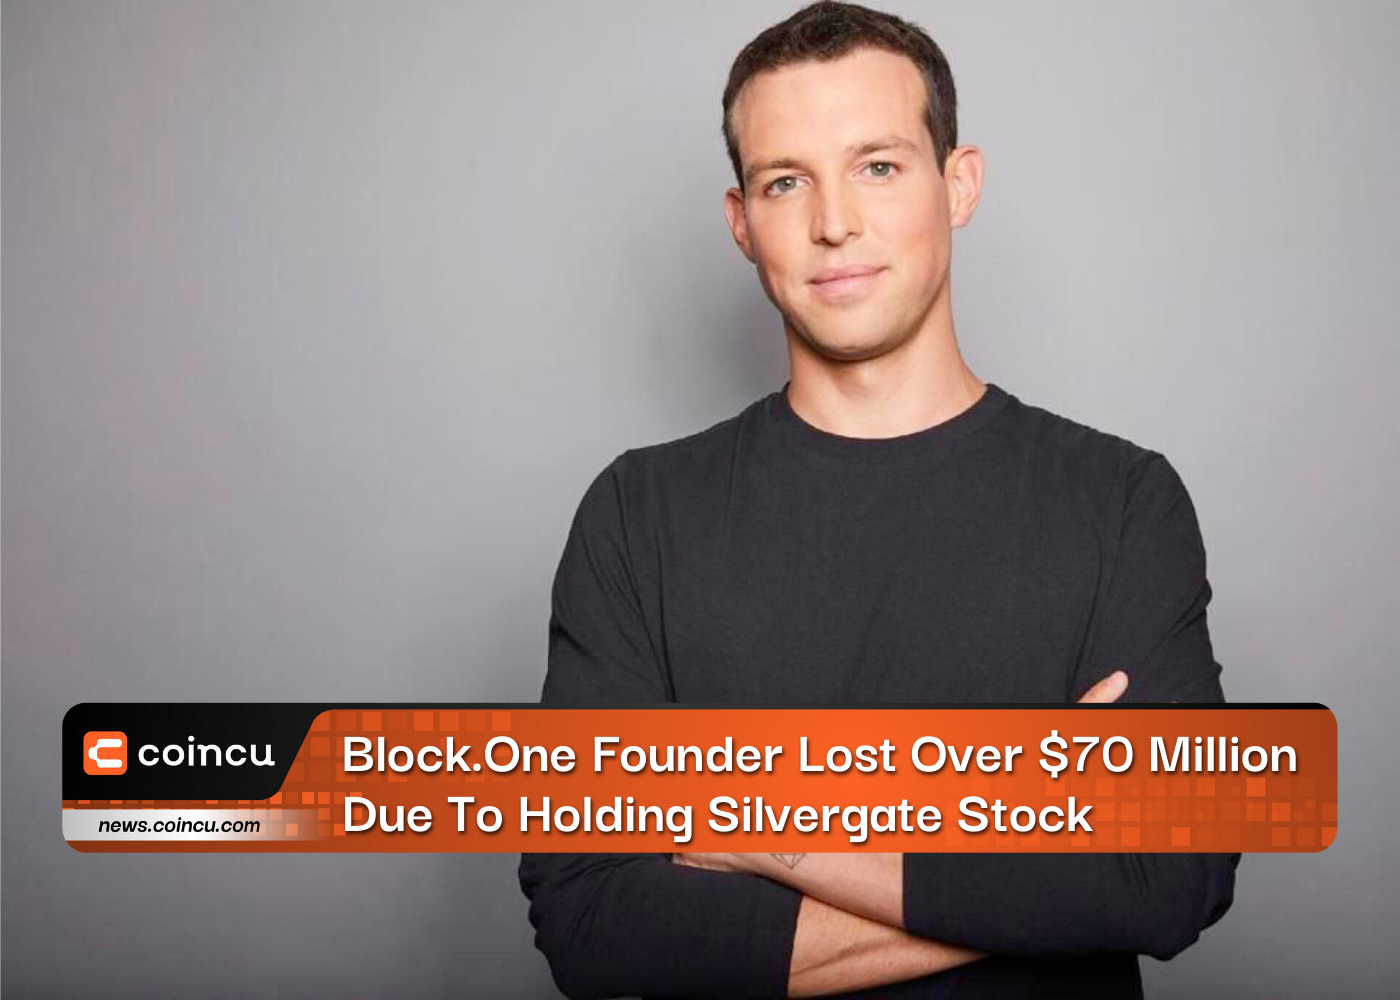 El fundador de Block.One perdió más de $ 70 millones debido a la tenencia de acciones de Silvergate